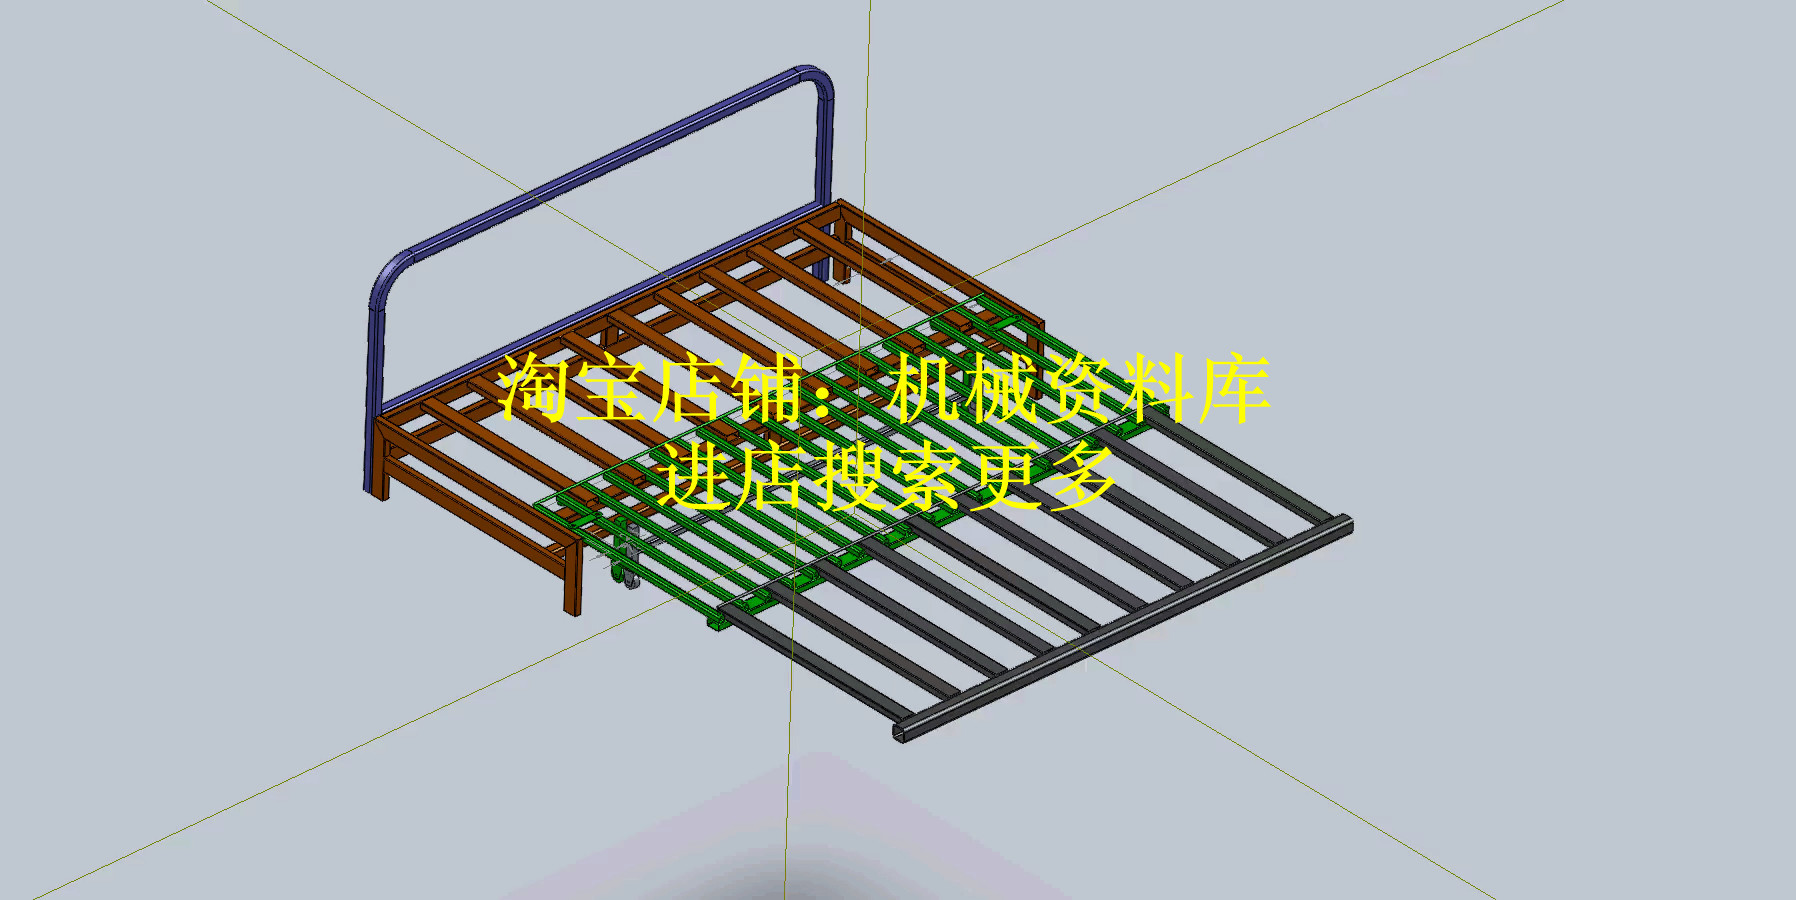 三折叠床沙发骨架3D图纸SW模型设计参考资料【383】